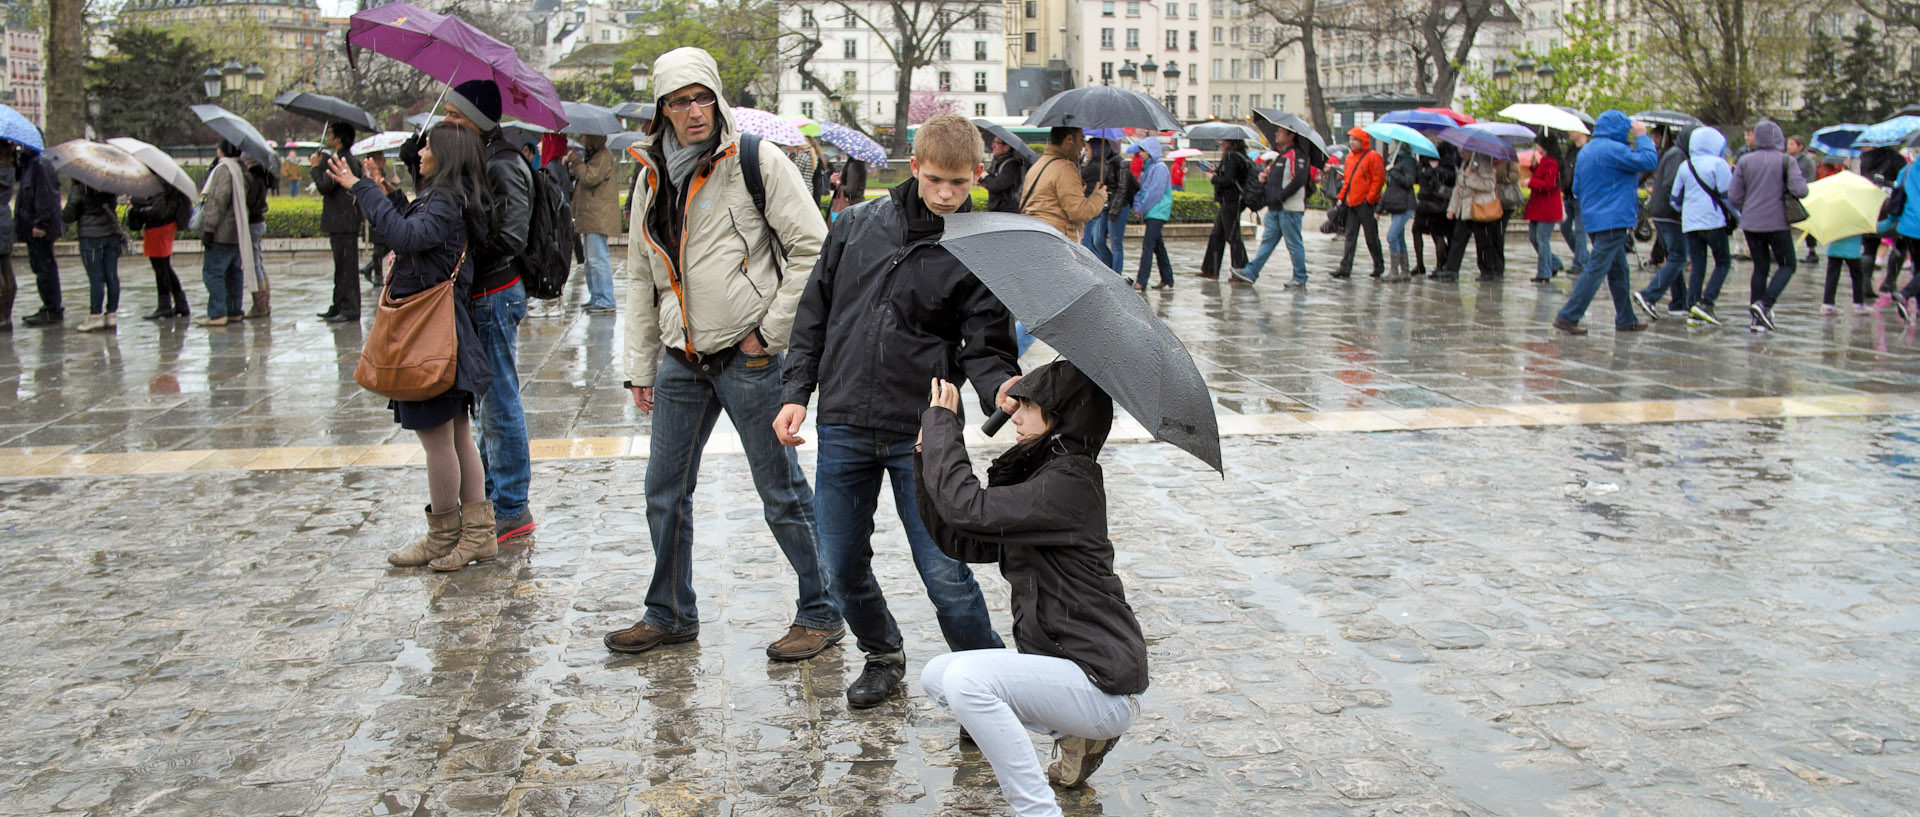 Touristes photographiant sous un parapluie, devant Notre Dame de Paris